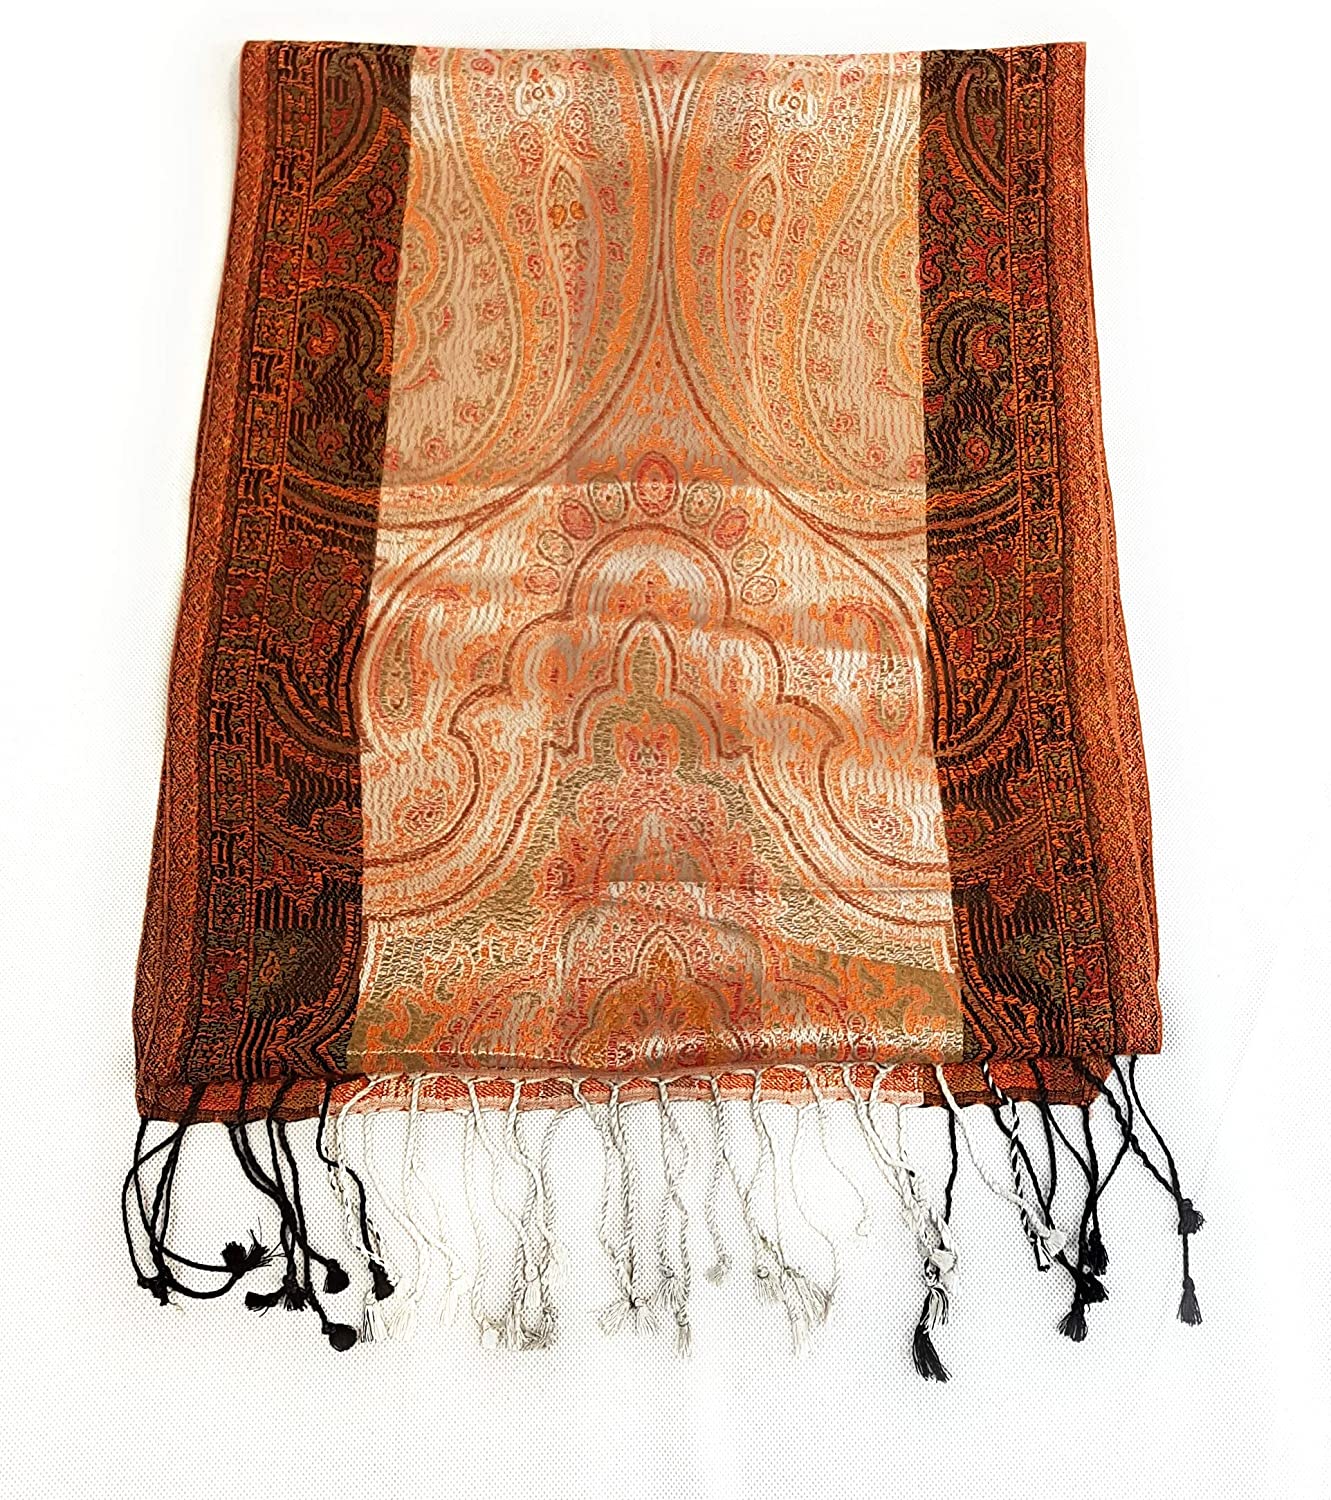 Luxus Seidenschal aus Indien für Damen & Herren, elegante Farben mit Fransen Paisley Muster 170 x 35 cm - Schal aus reiner Seide - diverse Designs